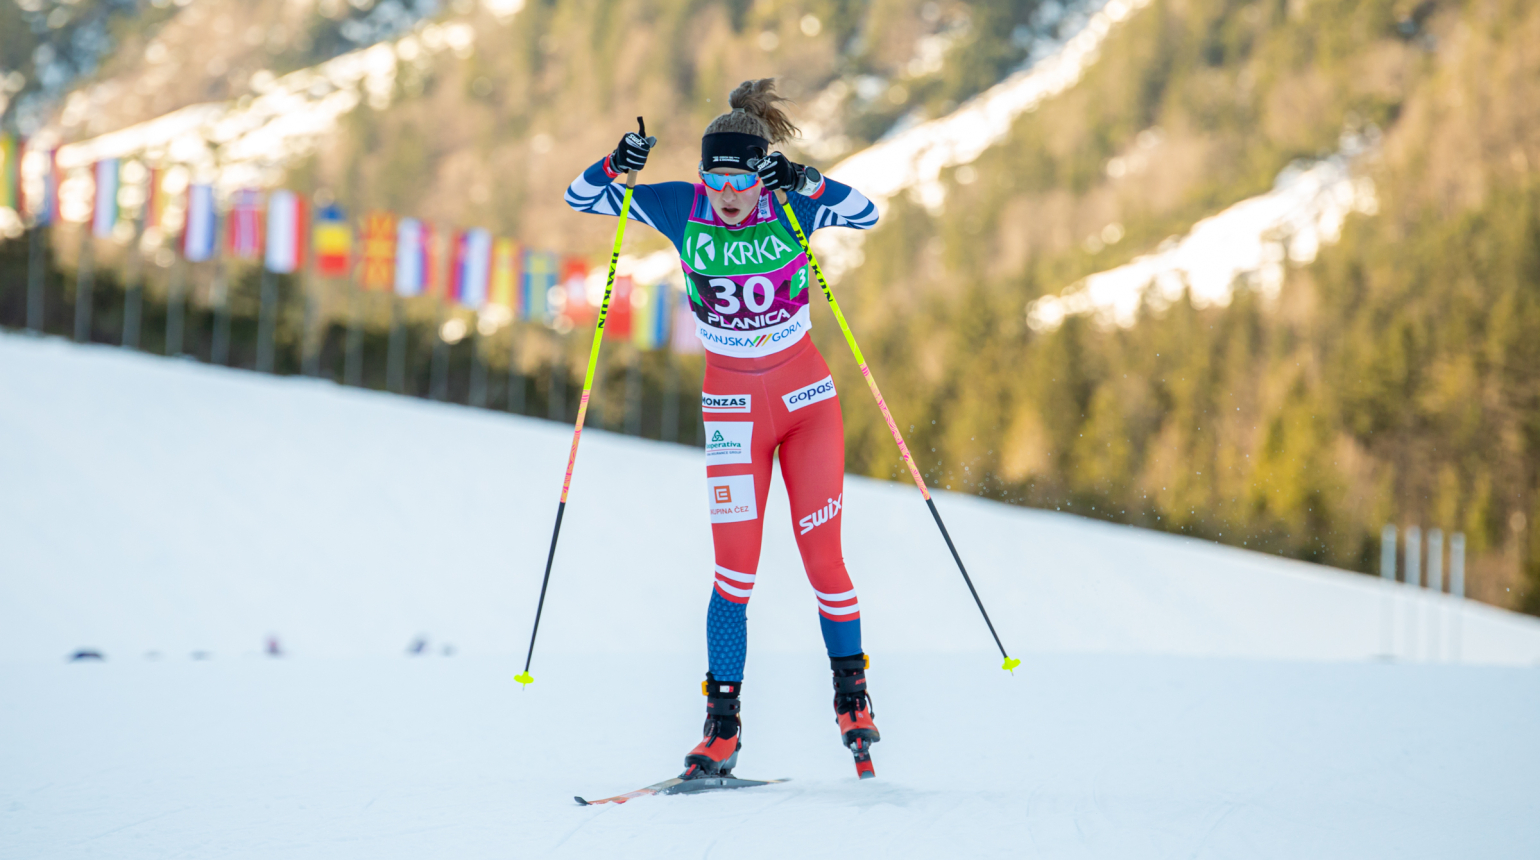 Milerská na FESA Alpen Cupu v Toblachu vybojovala dvě umístění v Top 10, ve sprintu prošla do finále